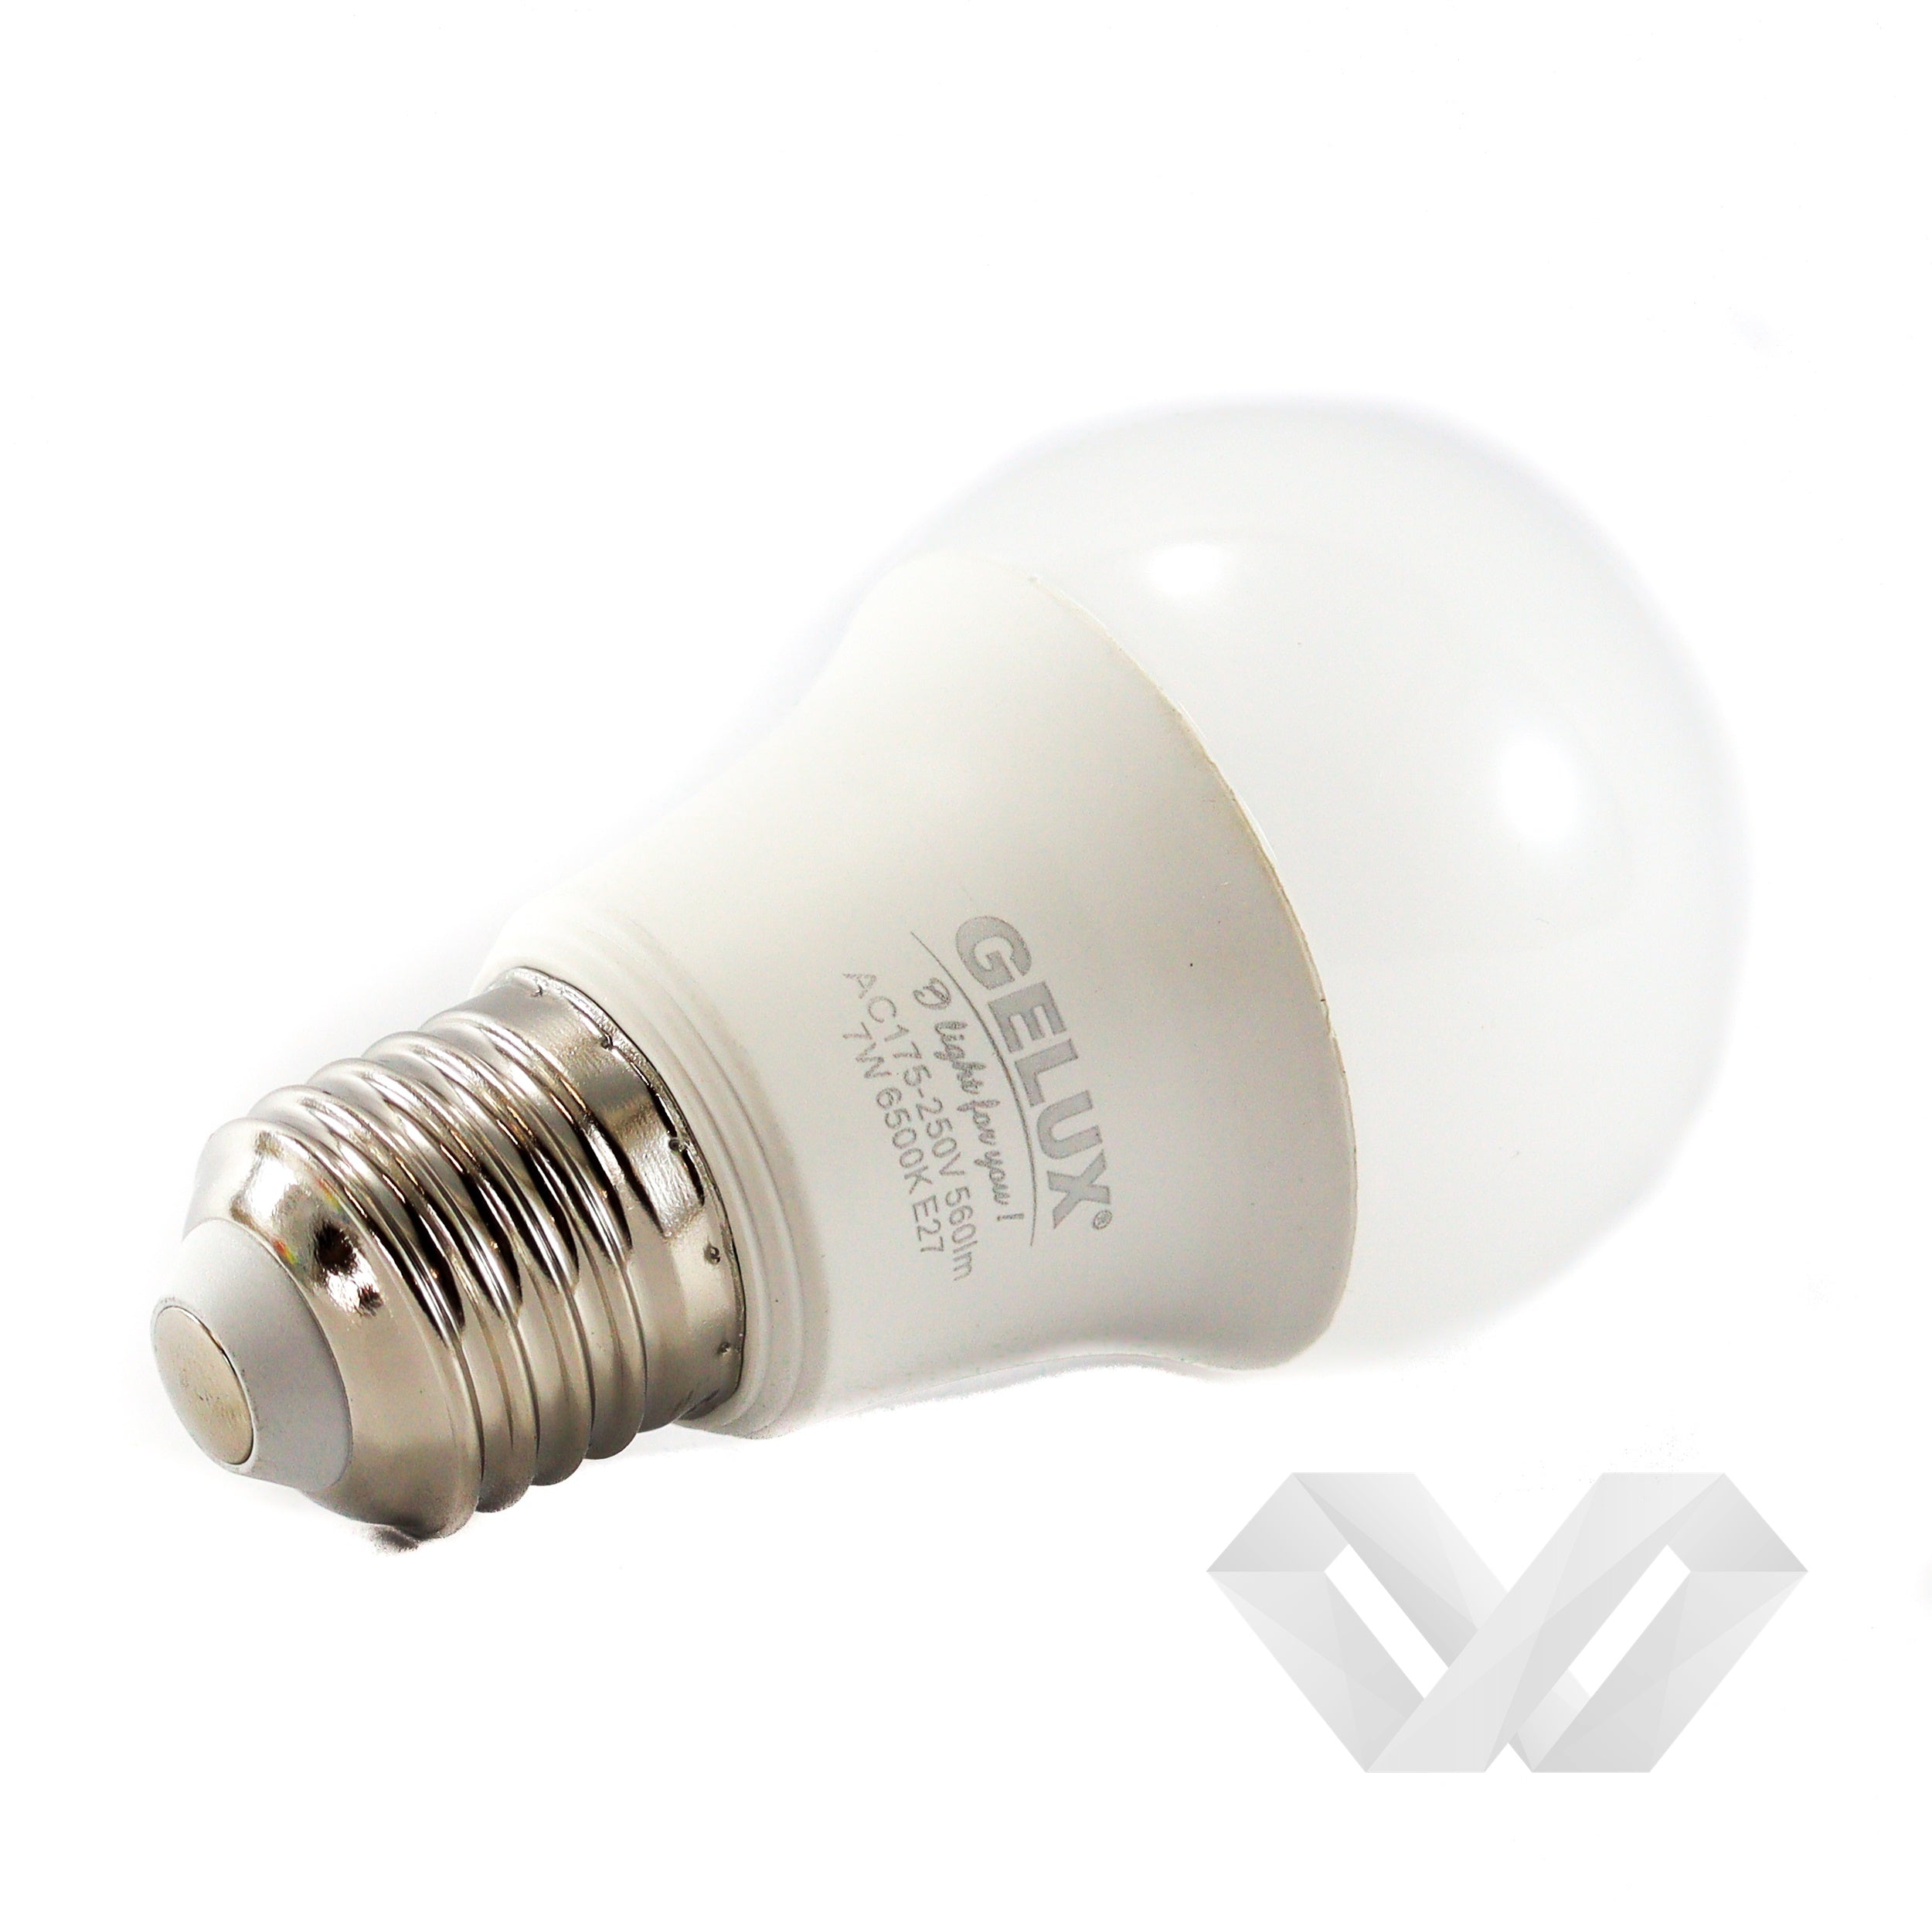 Bec LED 15W E27 Standard ECOLED, echivalent 120W lumină caldă, Gelux